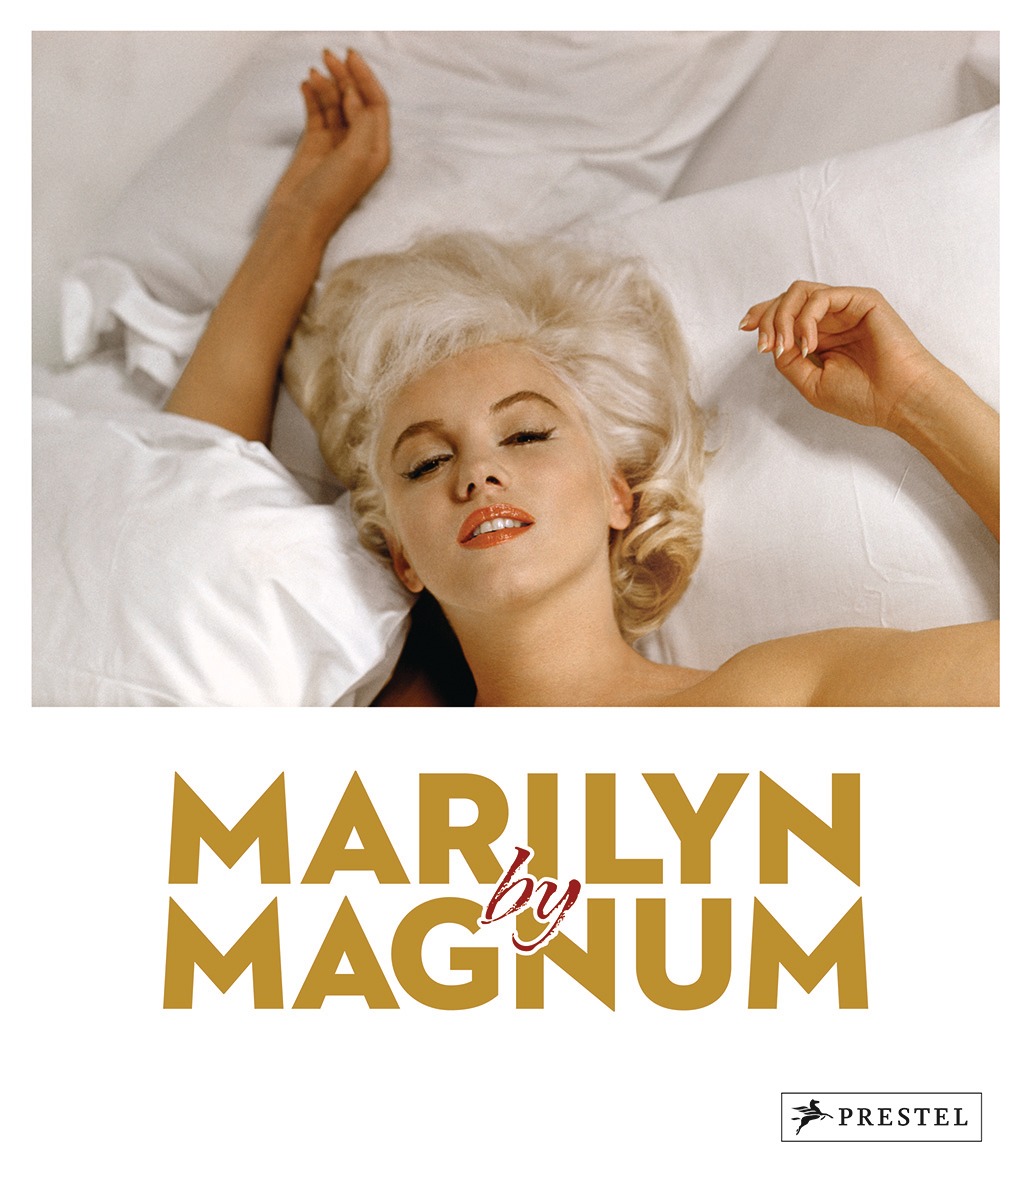 Buchcover: Marilyn by Magnum von Gerry Badger